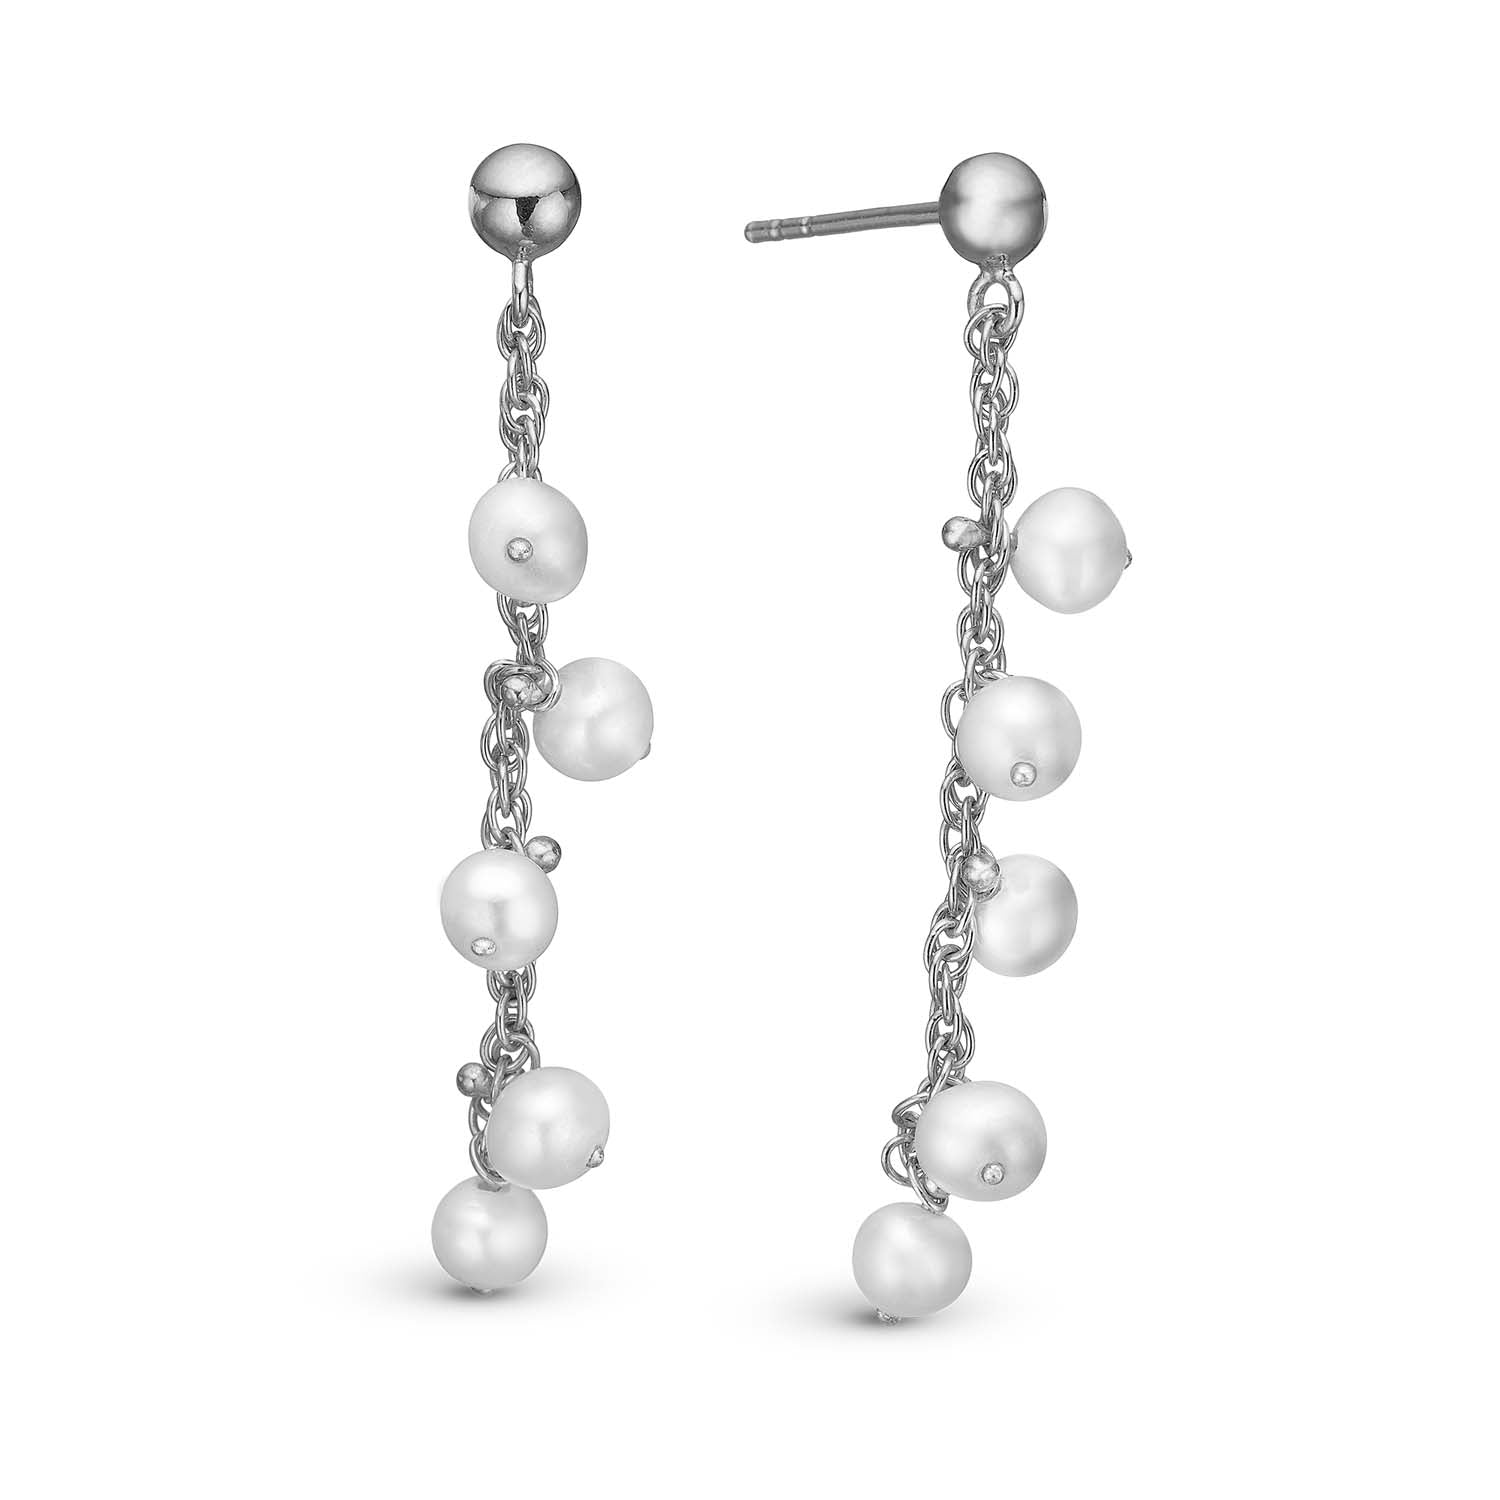 Se Christina Design London Jewelry & Watches - Dangling Pearls øreringe Sterlingsølv hos Vibholm.dk